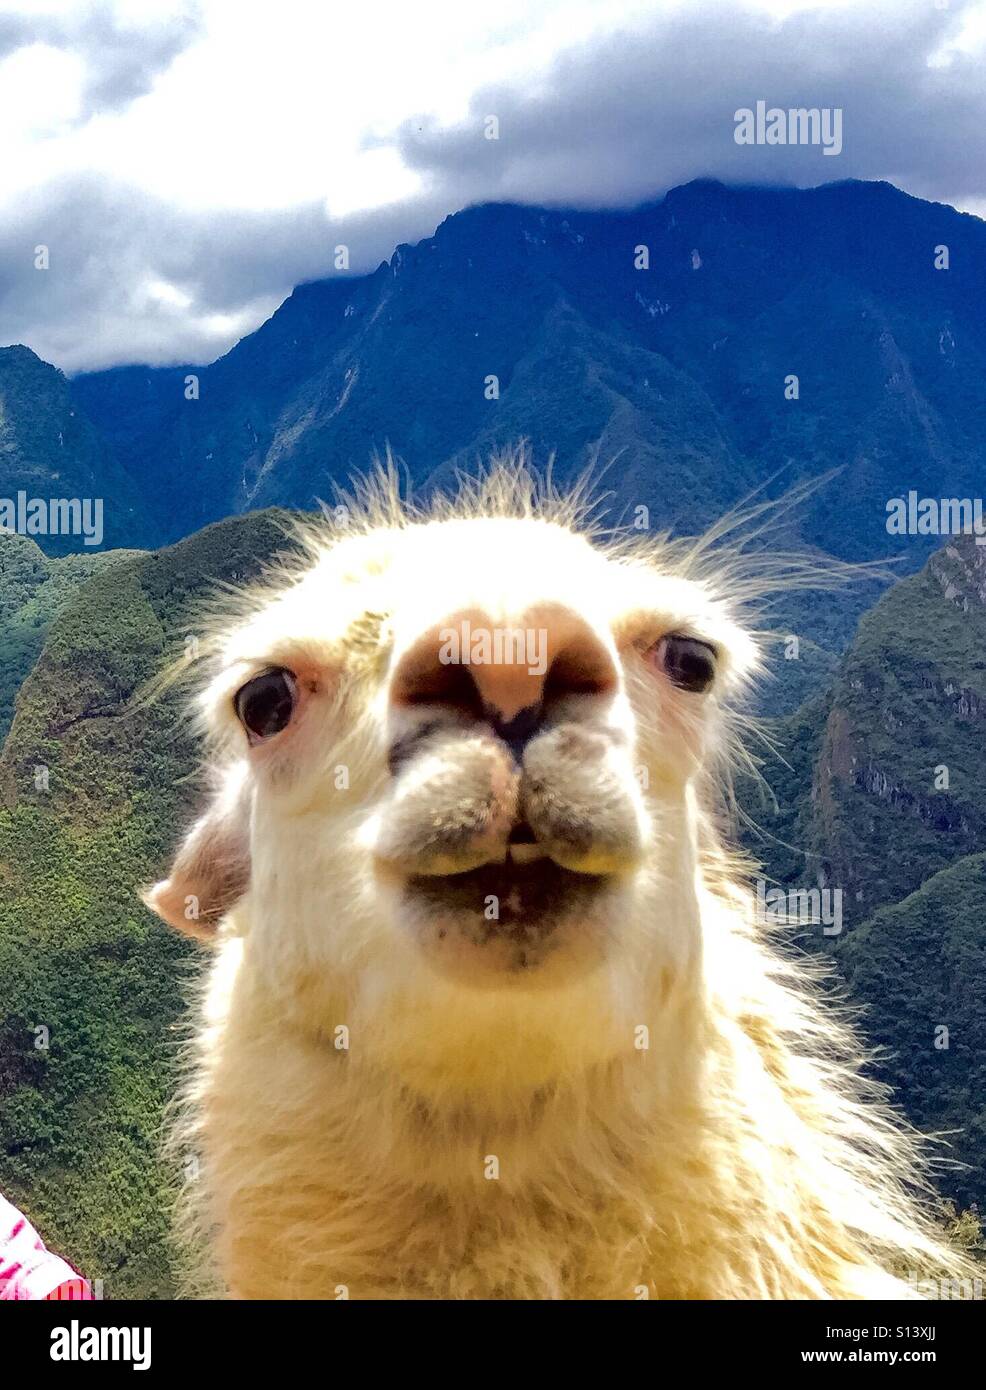 A cute llama Stock Photo